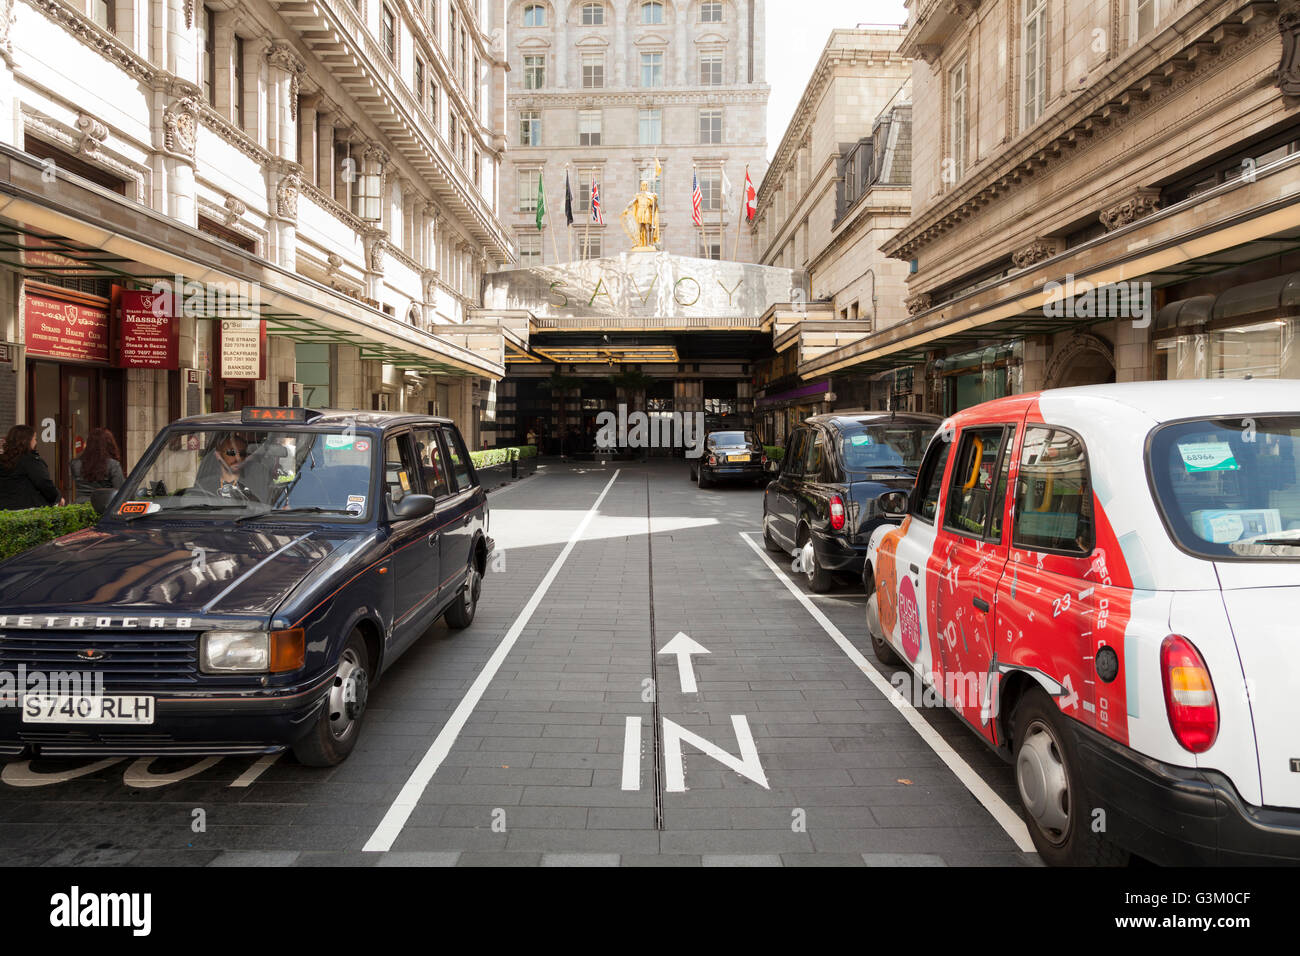 Les taxis garés devant l'entrée principale de Savoy Hotel dans le Strand, London, Angleterre, Royaume-Uni, Europe Banque D'Images